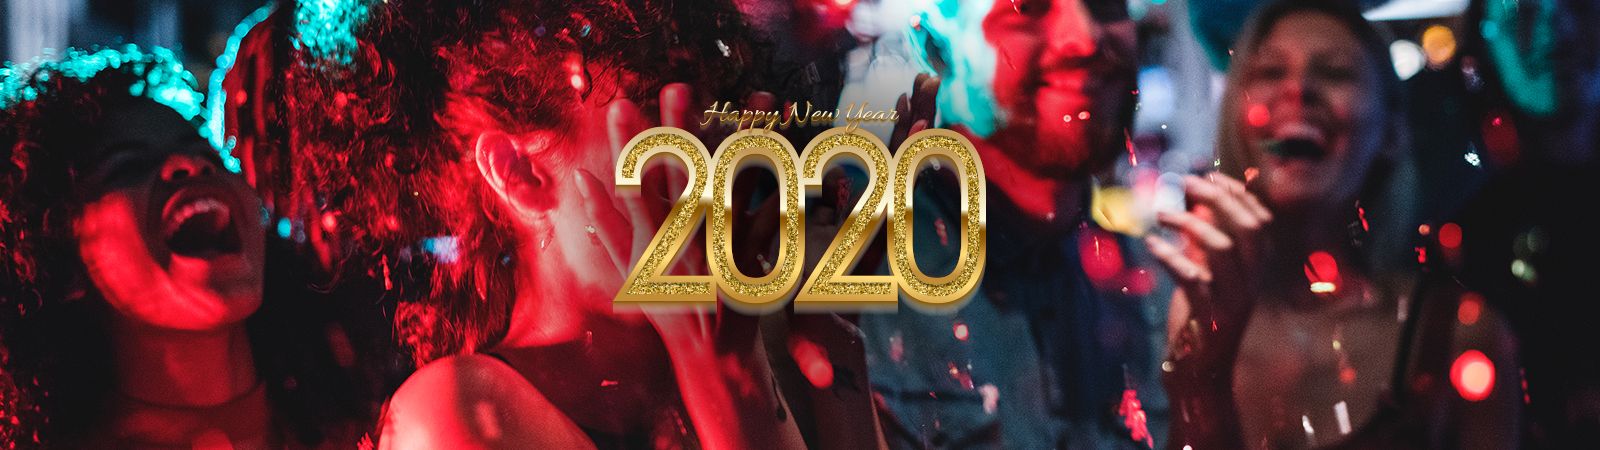 tulalip casino new years eve 2018